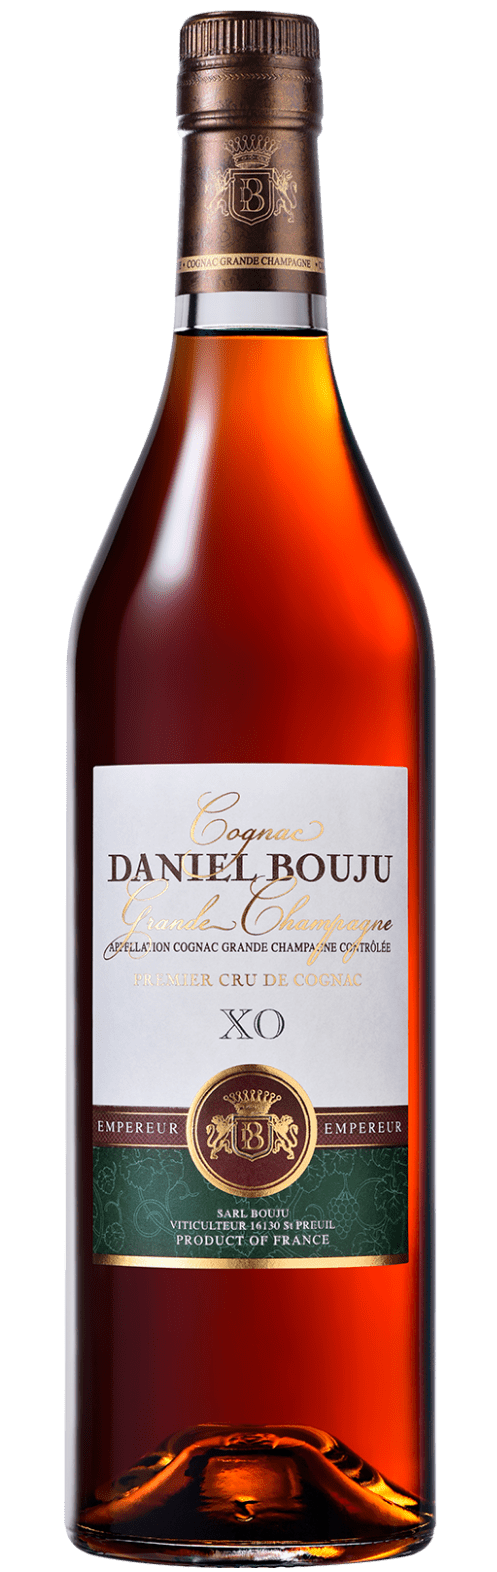 XO Cognac Grande Champagne A.C.C. Daniel Bouju